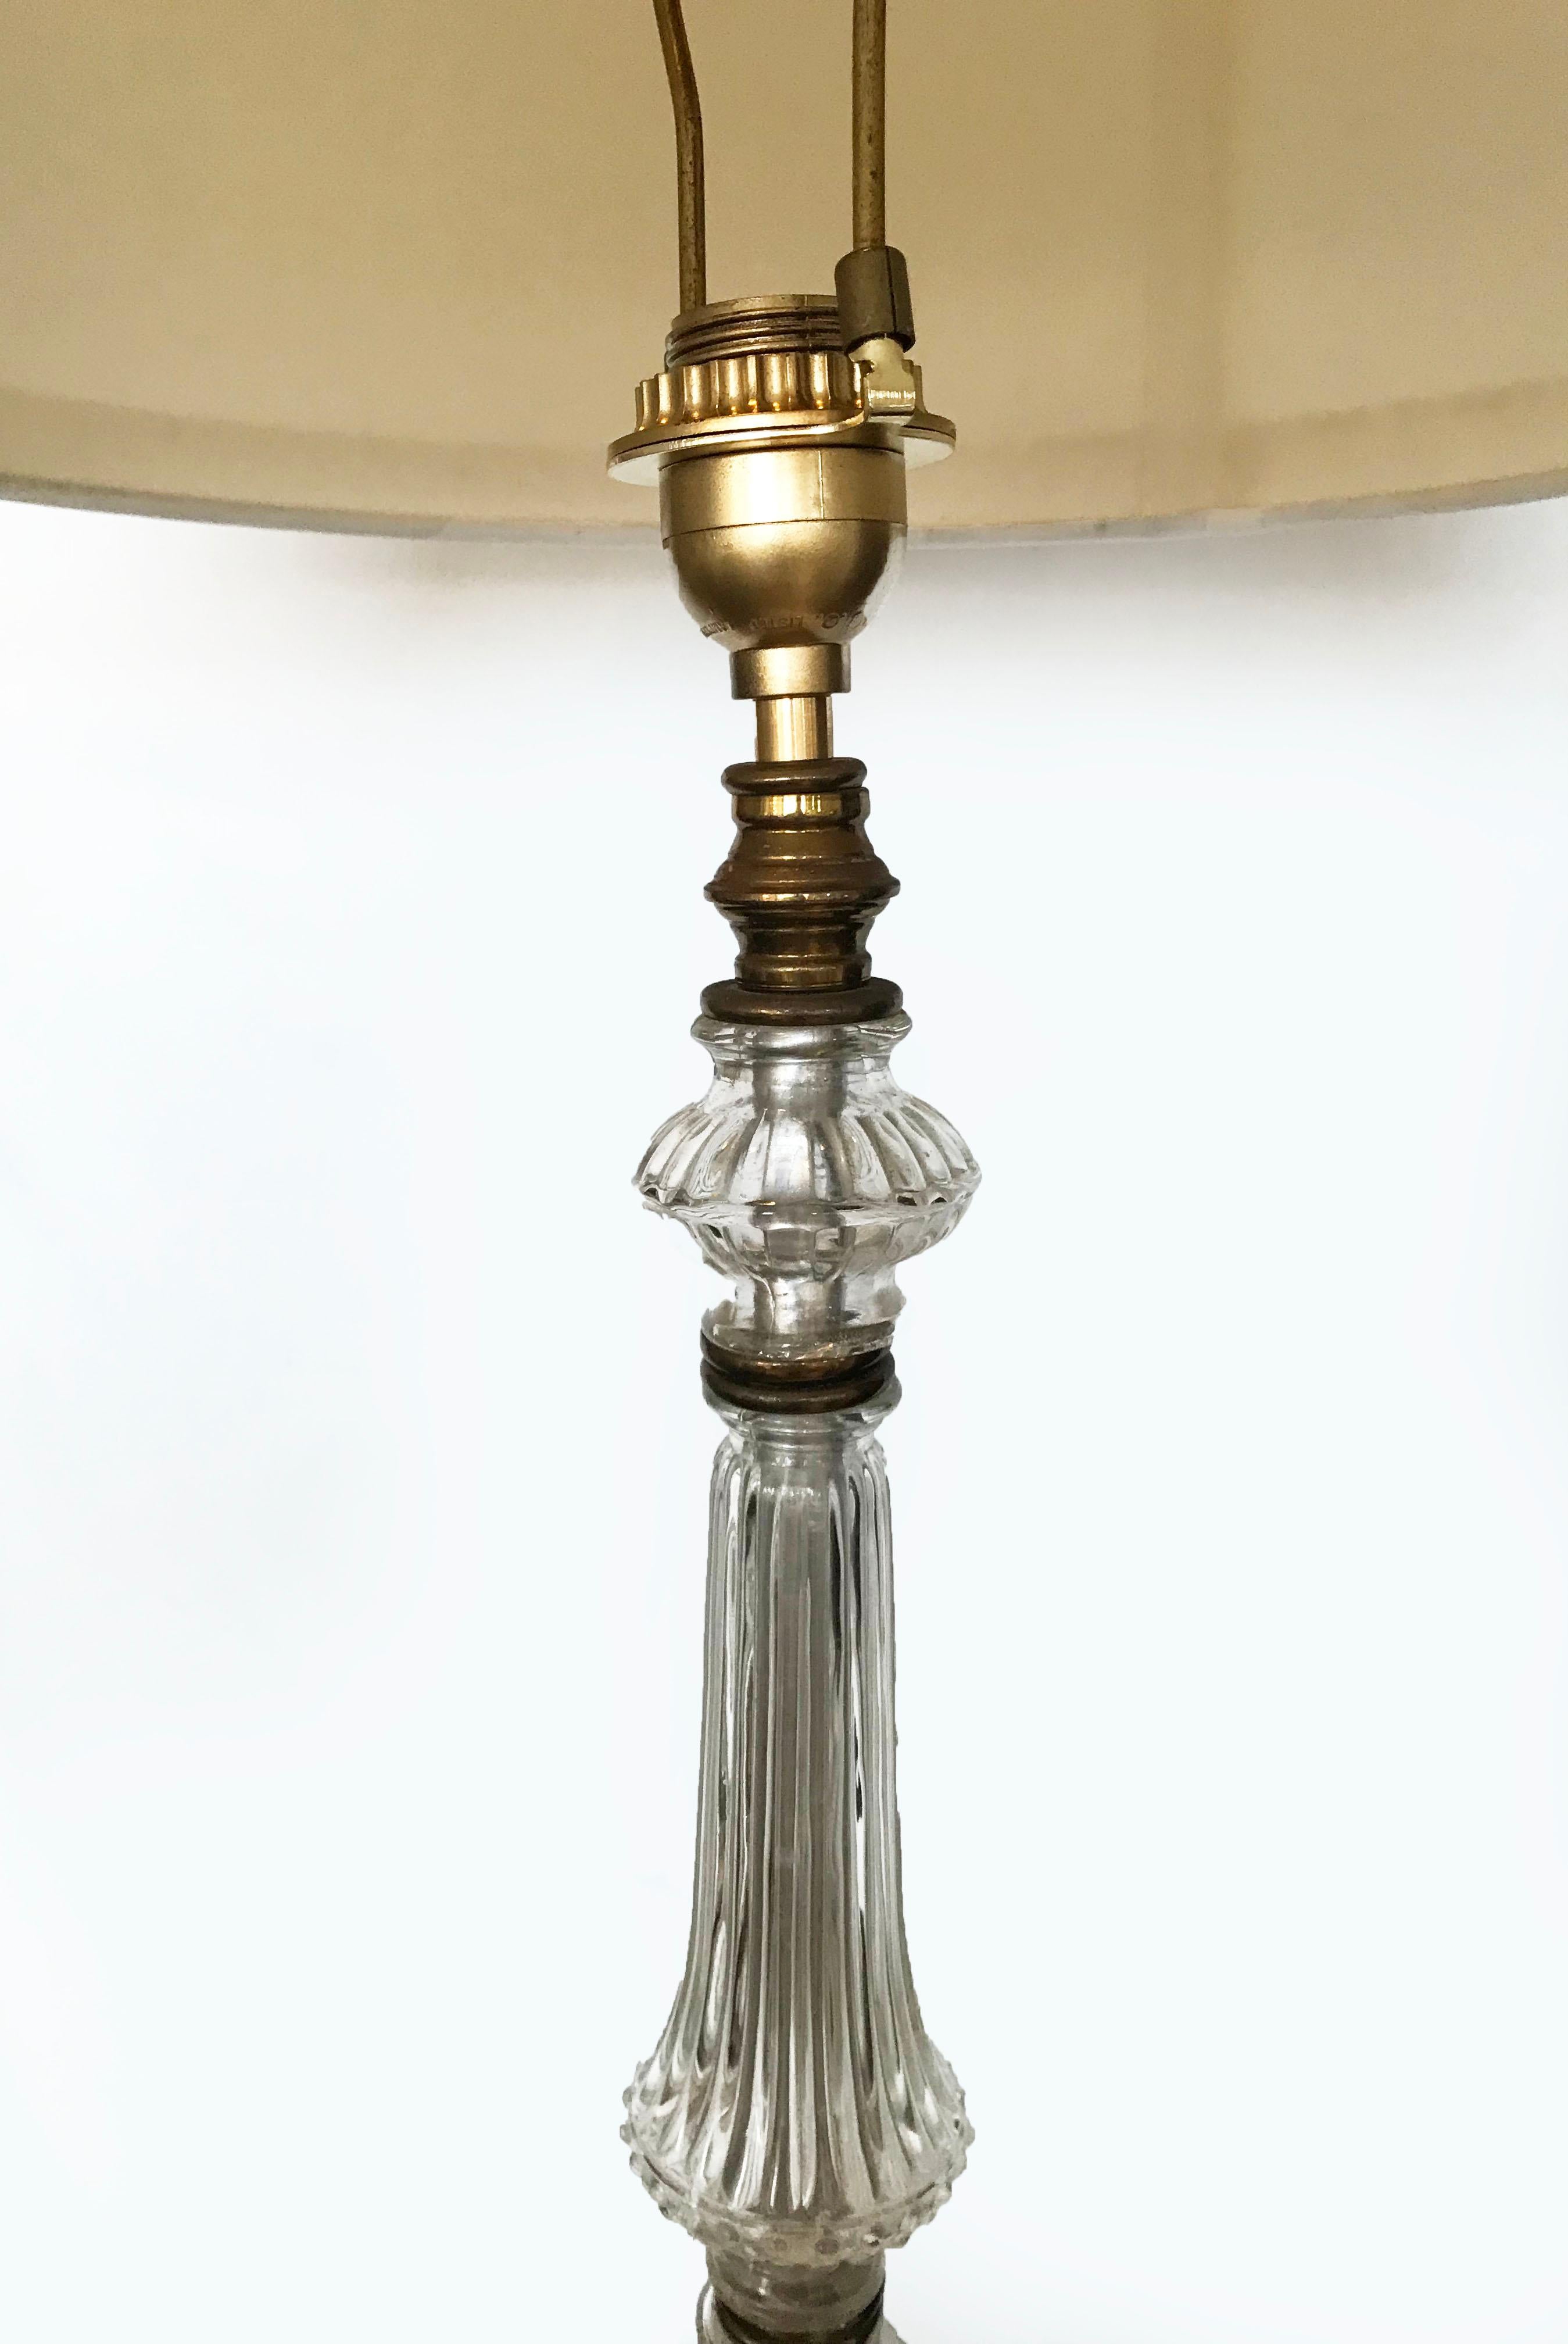 Splendide lampadaire en verre français datant d'environ 1940 
Base triangulaire géométrique en laiton torsadé
verre clair
1 ampoule 100W max 
Base tripode : 19